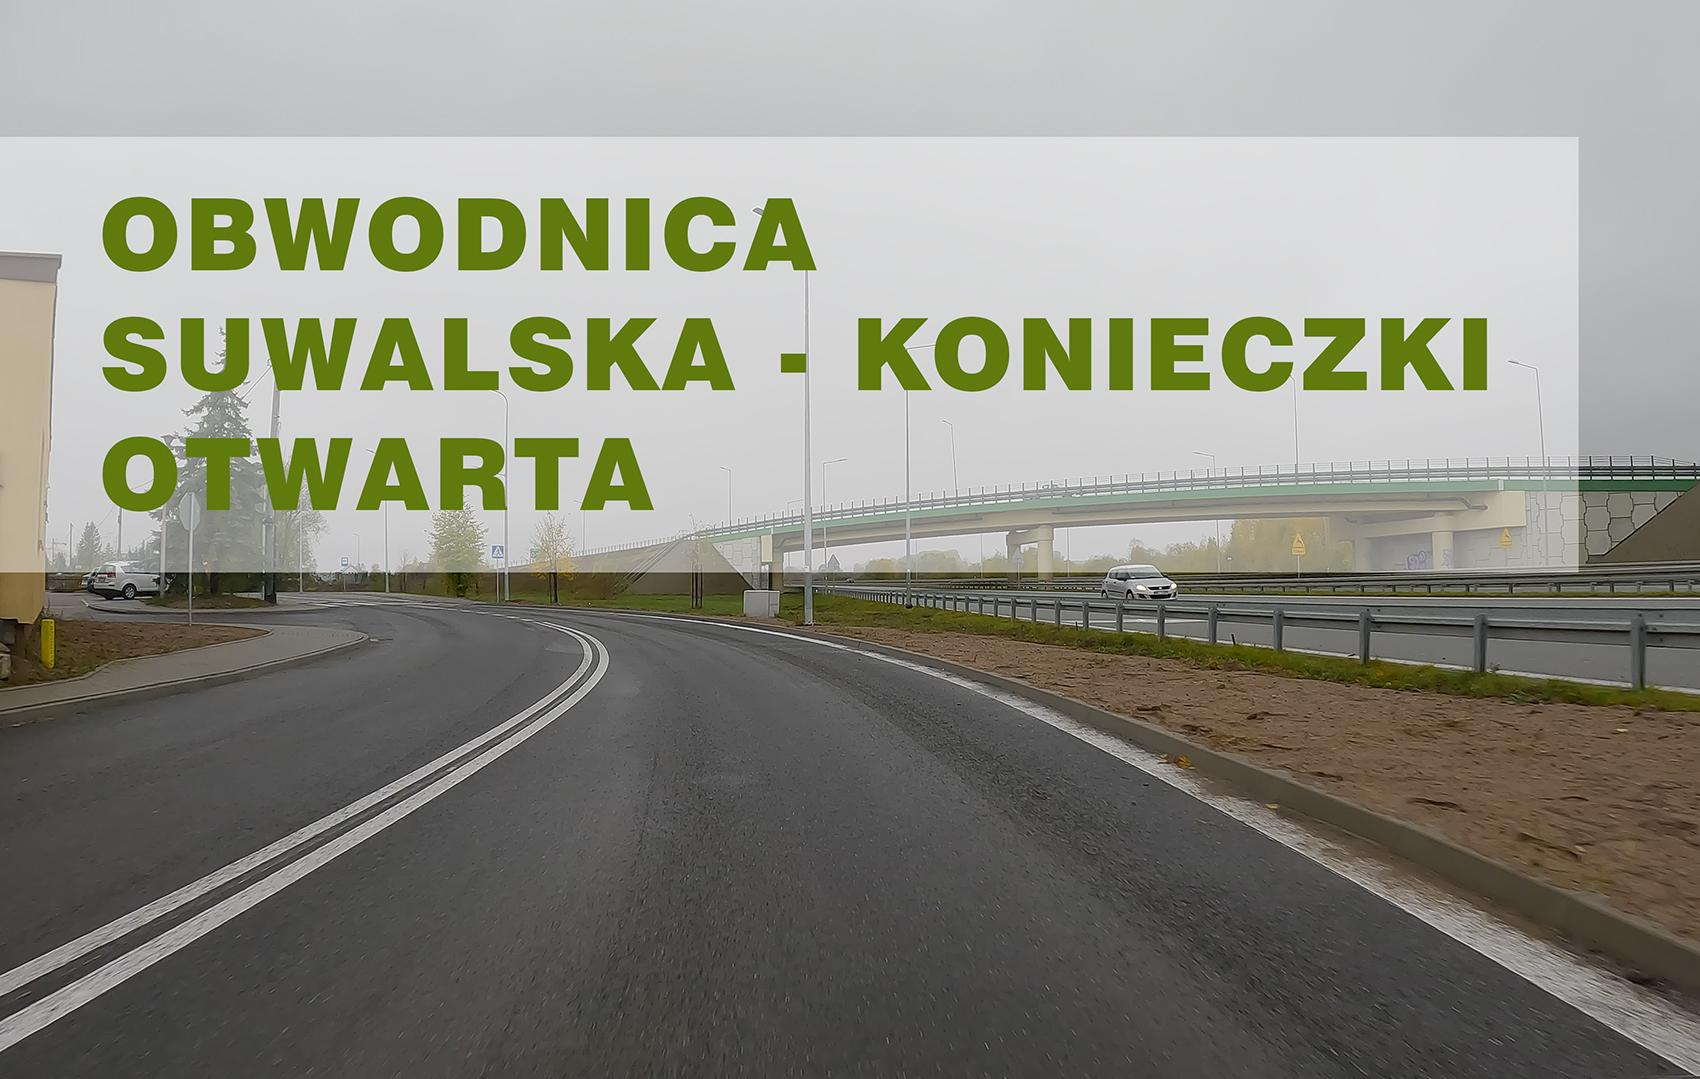 Prenderemo la circonvallazione da via Suwalska a Konieczki